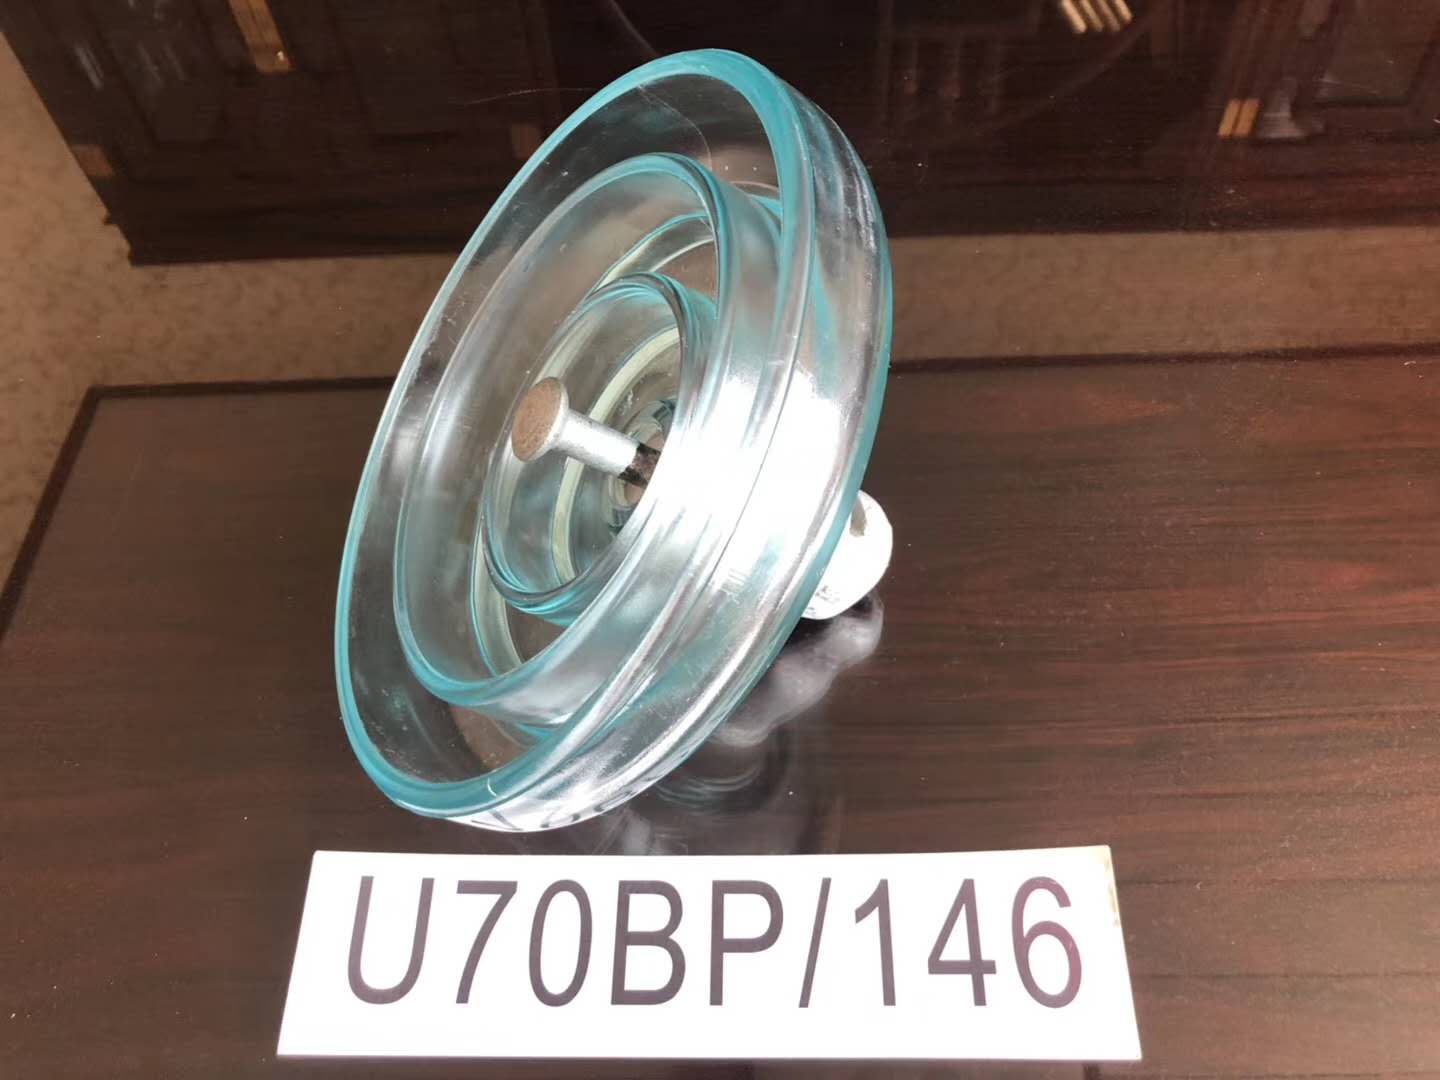 河北华朋电力玻璃绝缘子、U70BP/146、U120BP/146